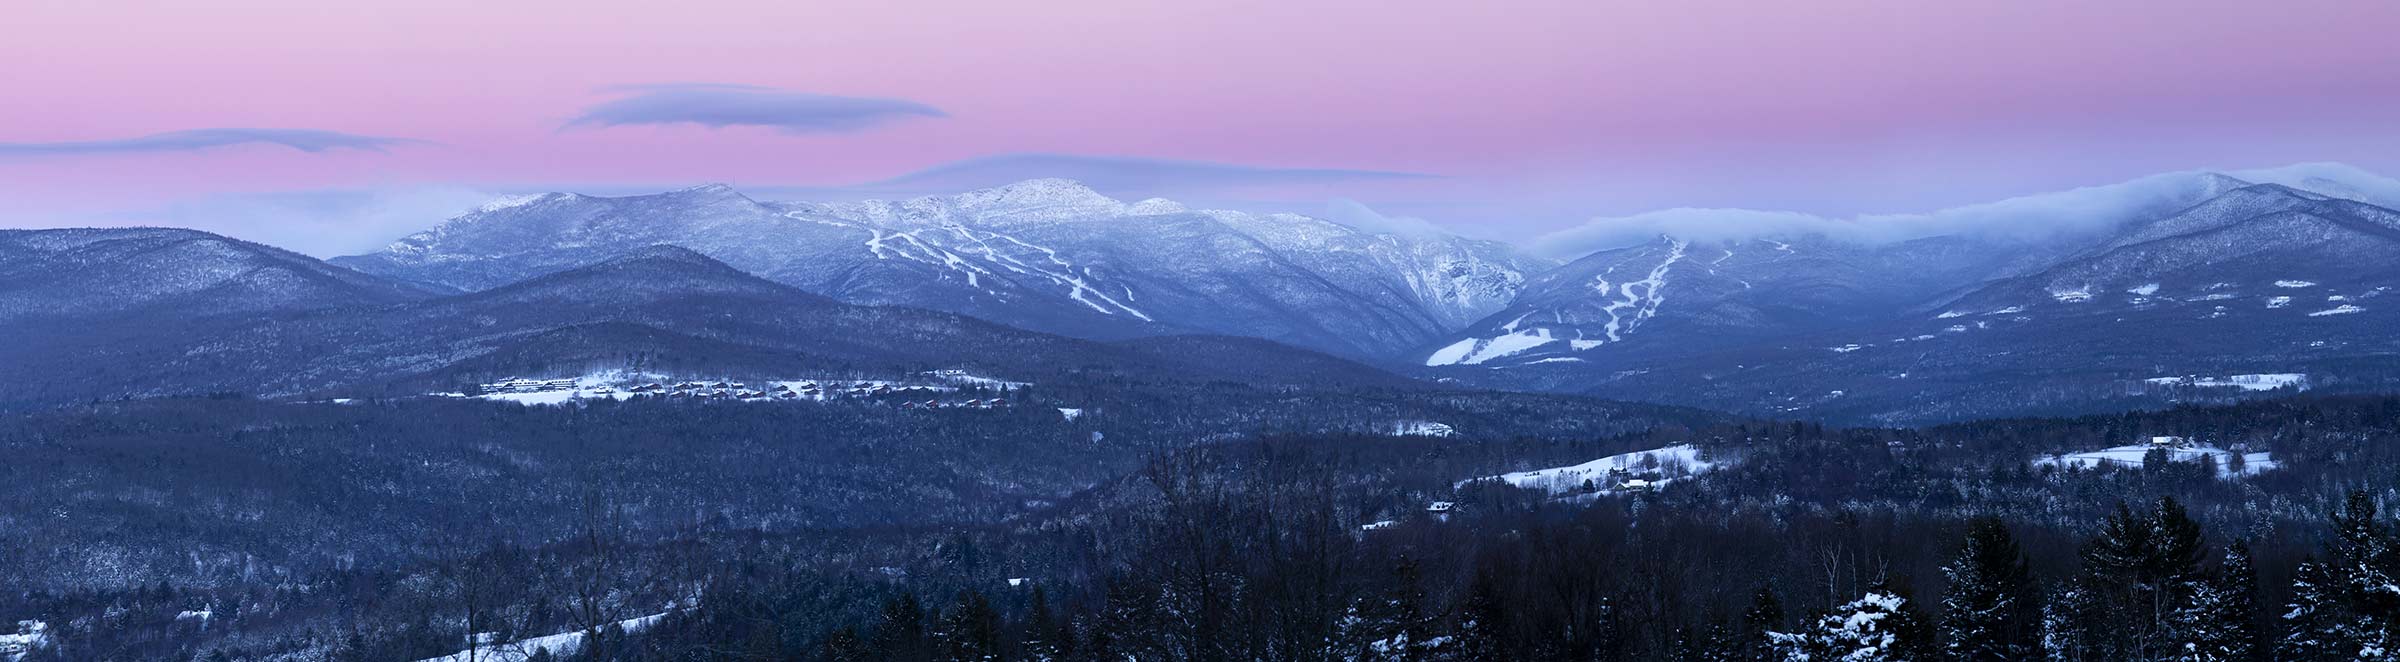 evening photo of ski mountains